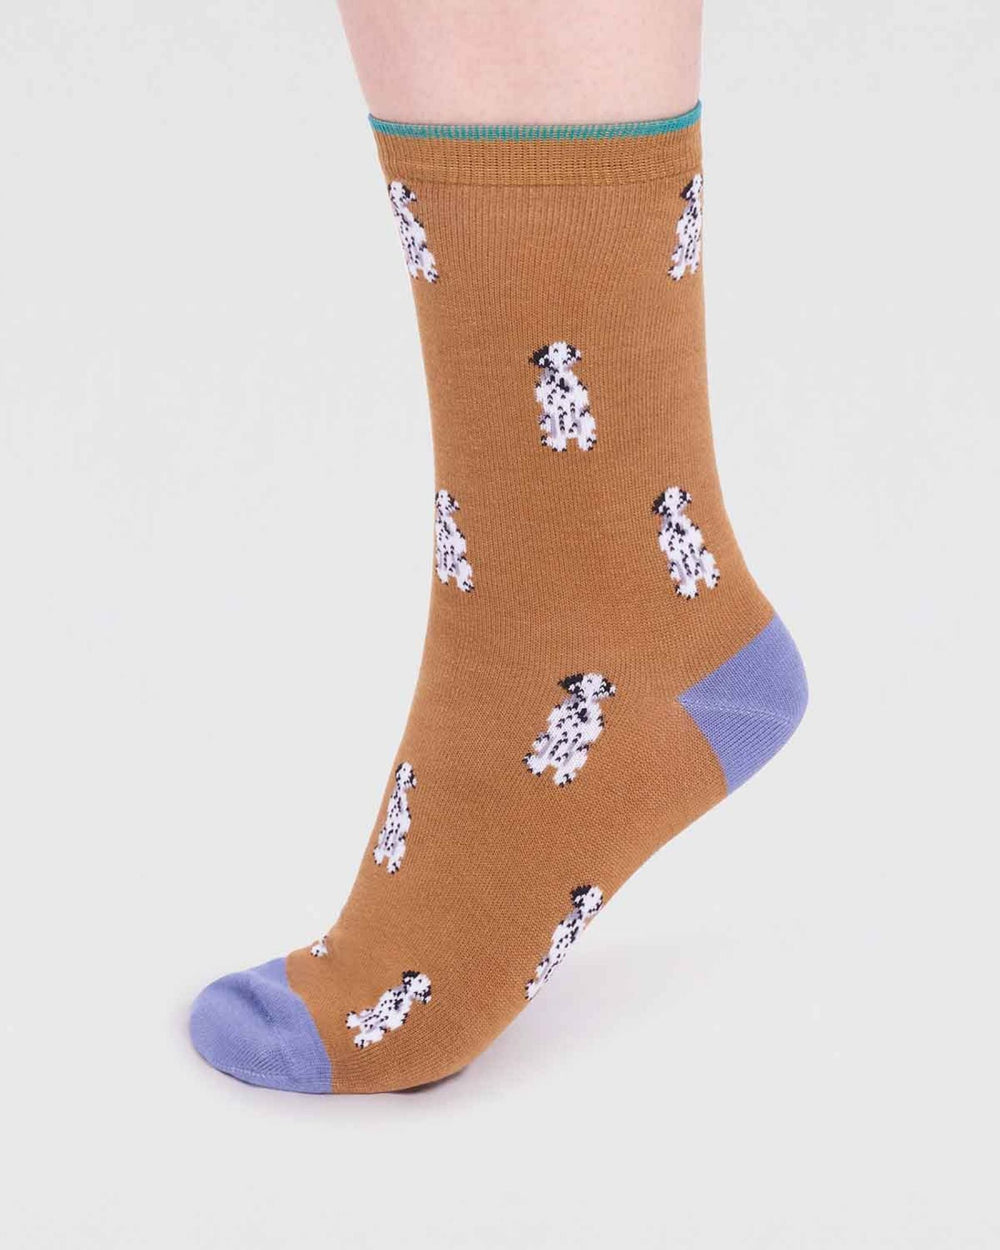 Dalmatian dog socks